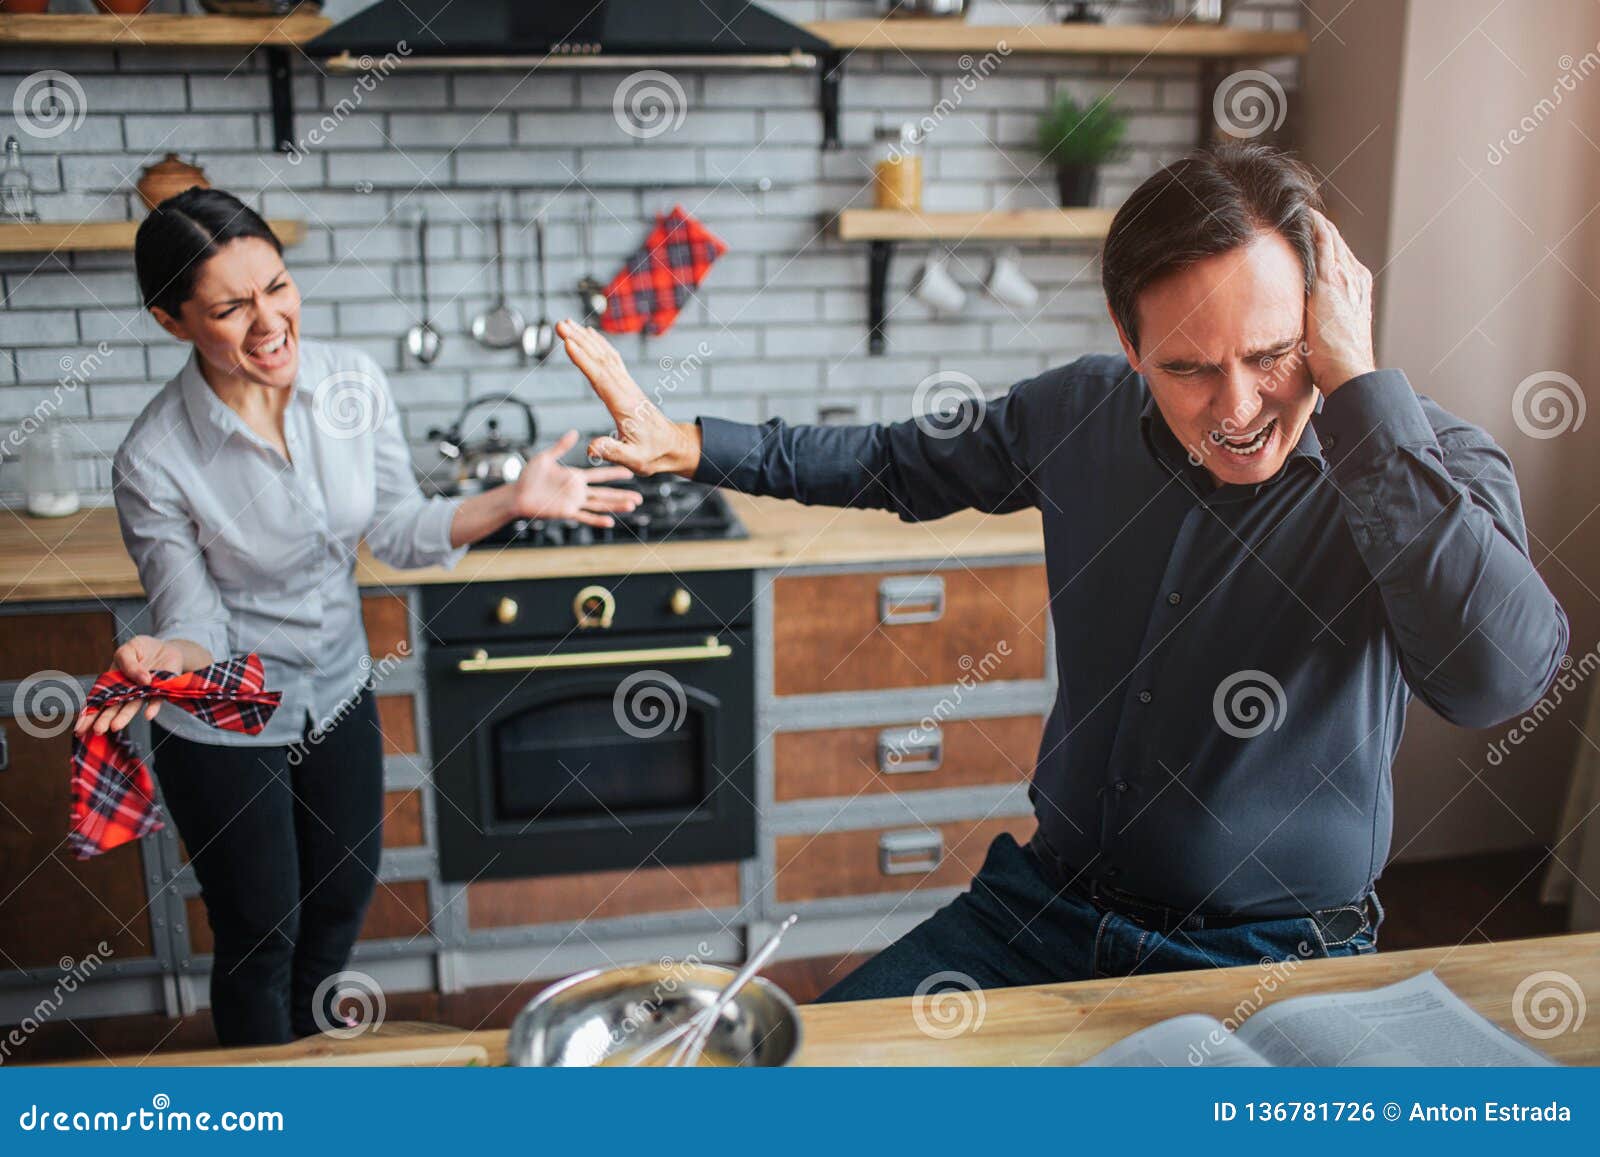 Сидим с мужем на кухне. Муж и жена на кухне за столом. Мужчина сидит за столом на кухне. Люди сидят на кухне. Муж с женой сидят за столом на кухне.